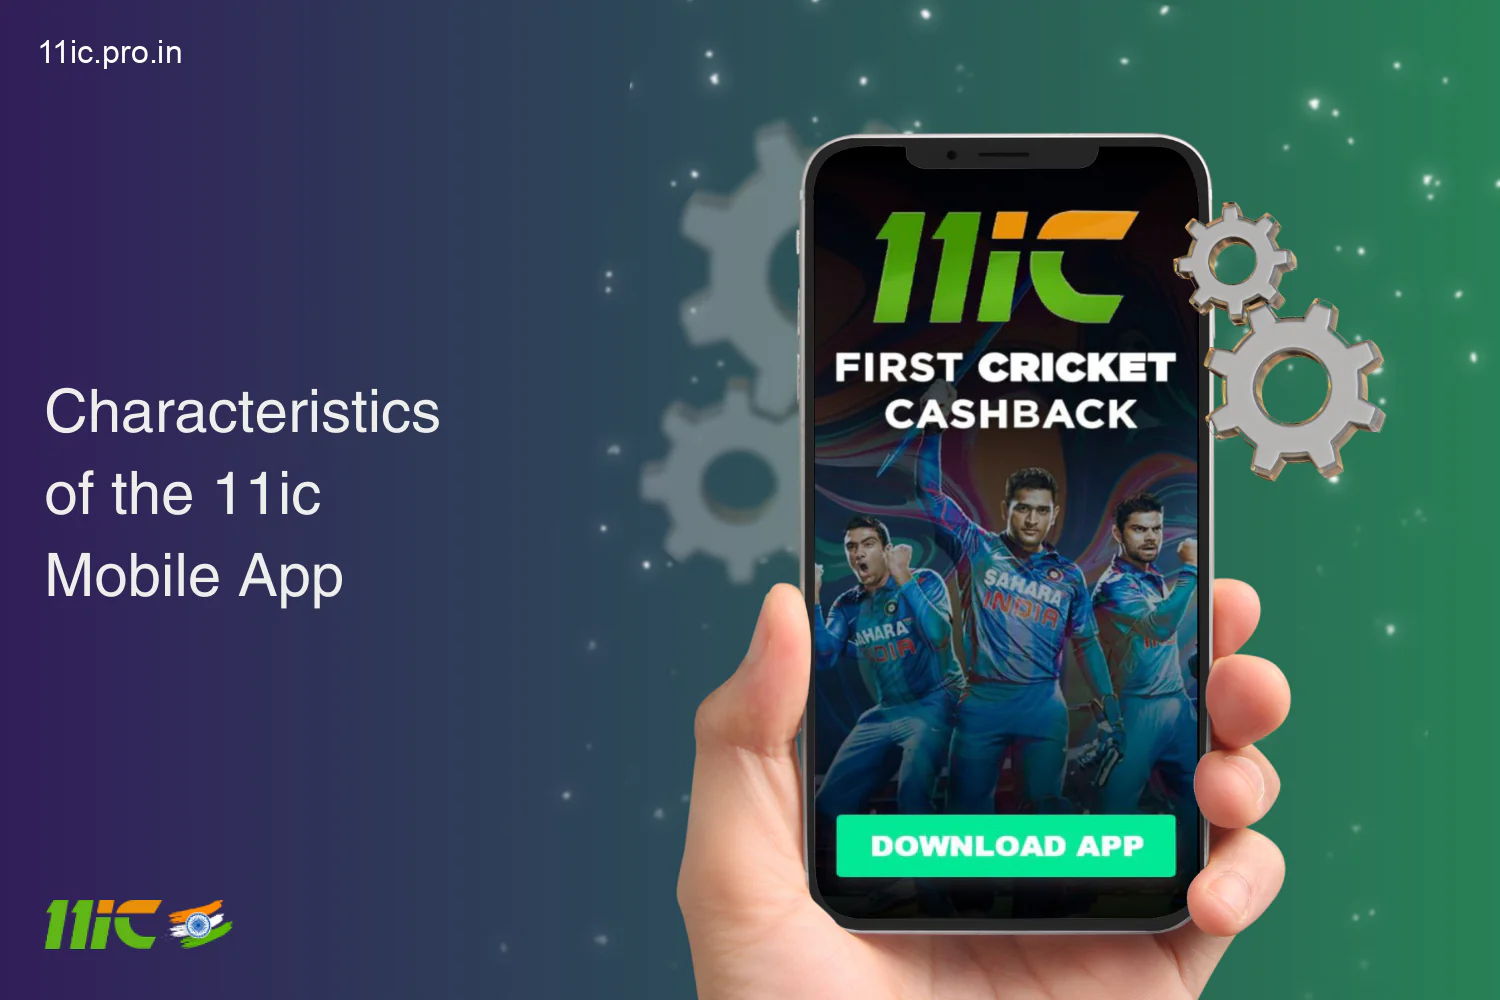 भारतीय उपयोगकर्ताओं के लिए 11ic मोबाइल ऐप पूर्ण कार्यक्षमता और उपयोग में आसानी प्रदान करता है